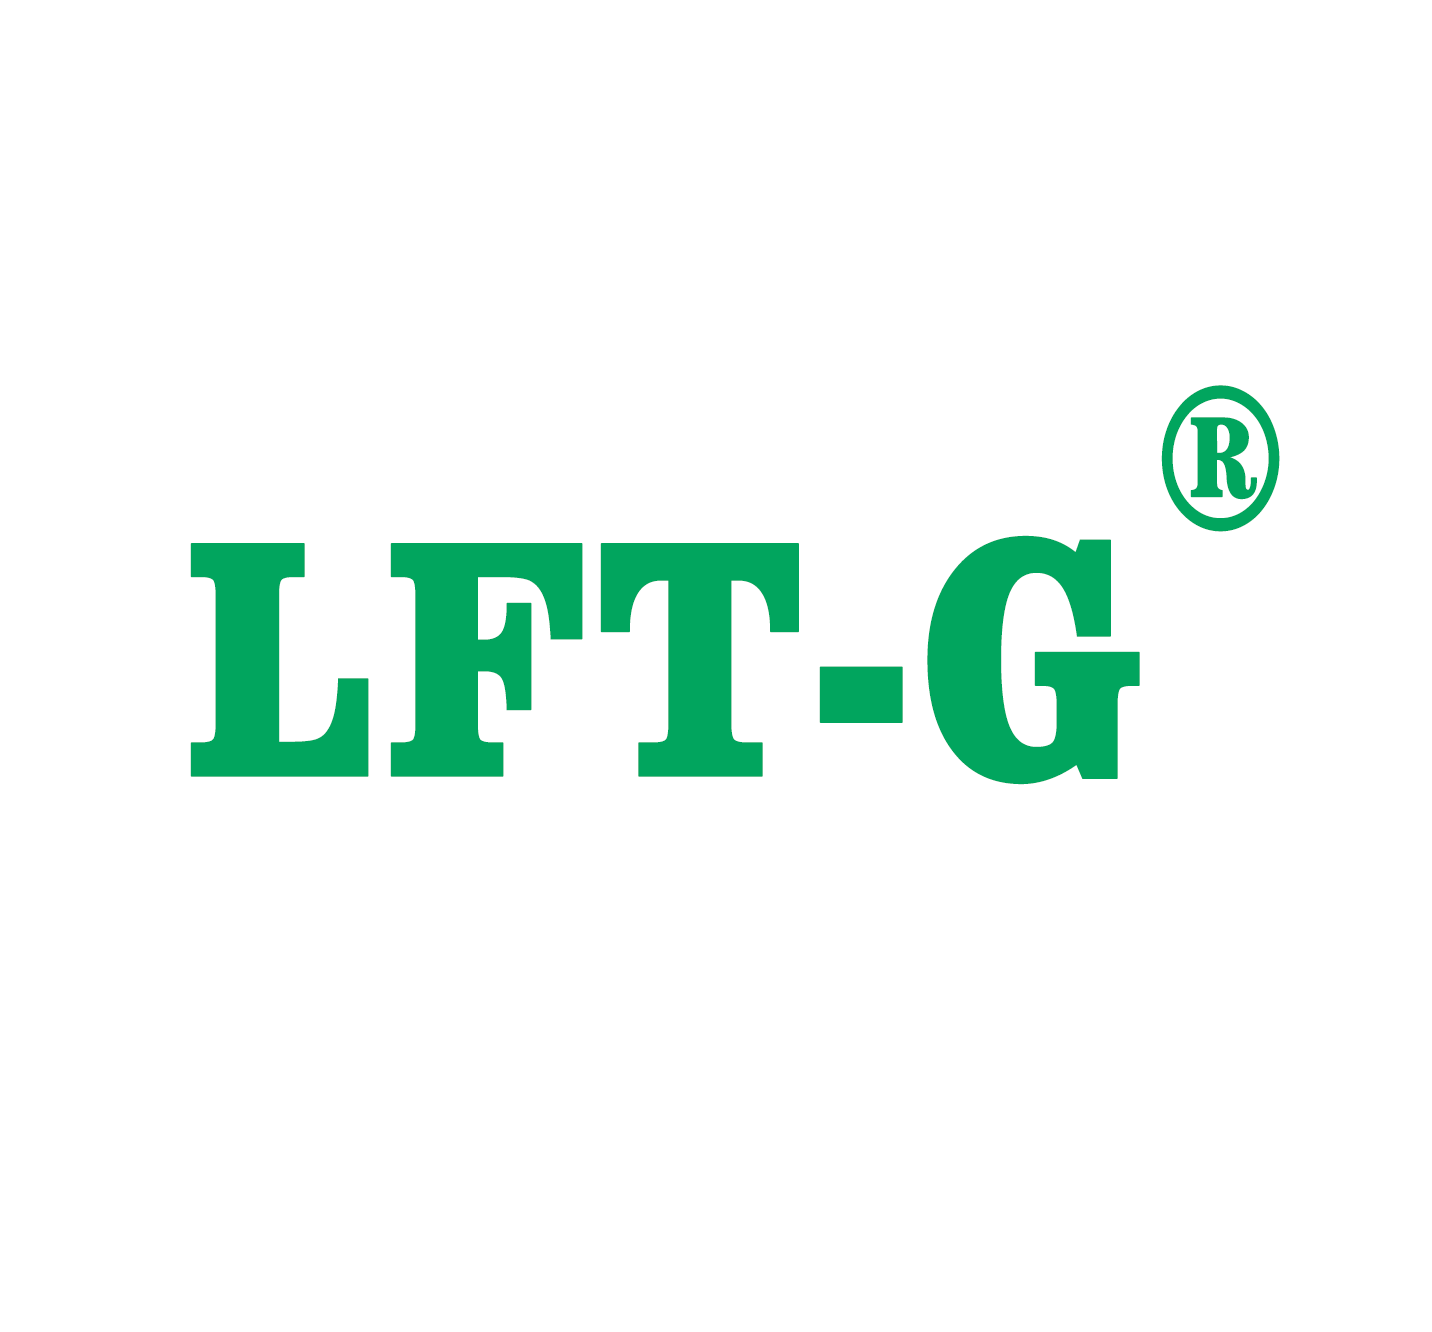  LFT-G начать новое путешествие в новом году